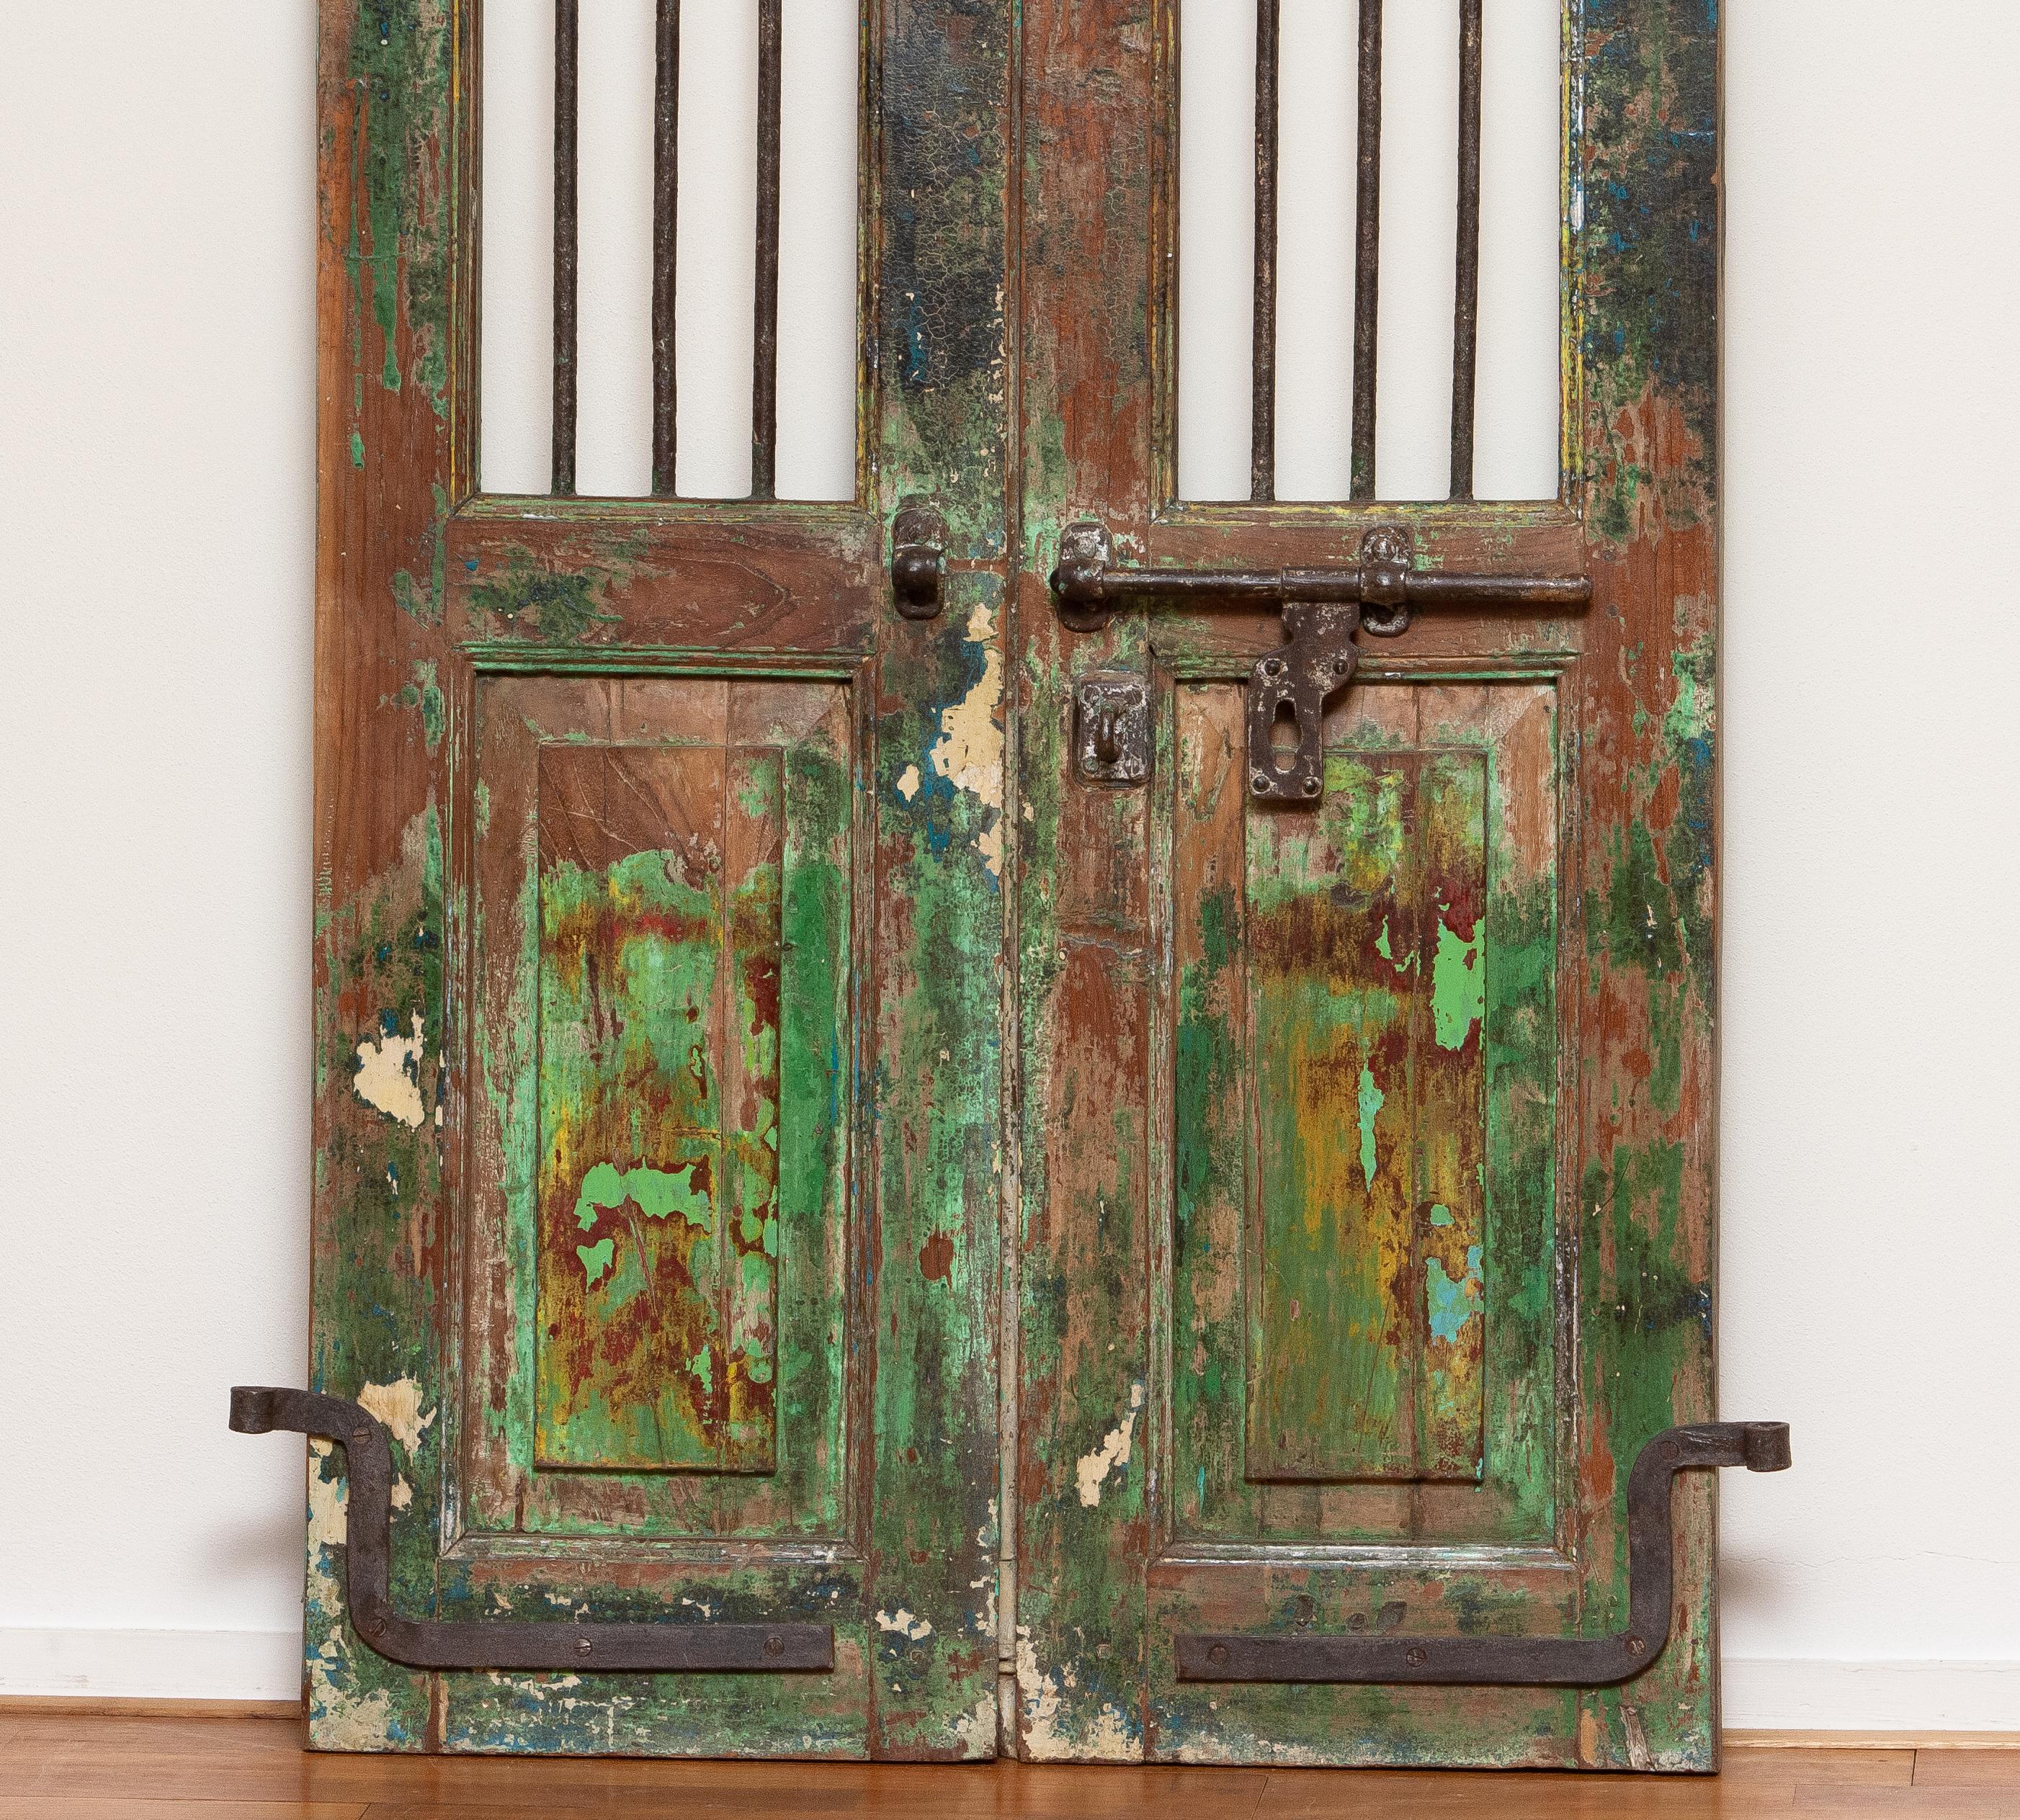 Volets de fenêtre ou de porte indiens du XIXe siècle. Complet avec les suspensions d'origine et le mécanisme de verrouillage en métal. Les portes sont munies de panneaux et, au-dessus du mécanisme de verrouillage, chaque porte comporte trois barres